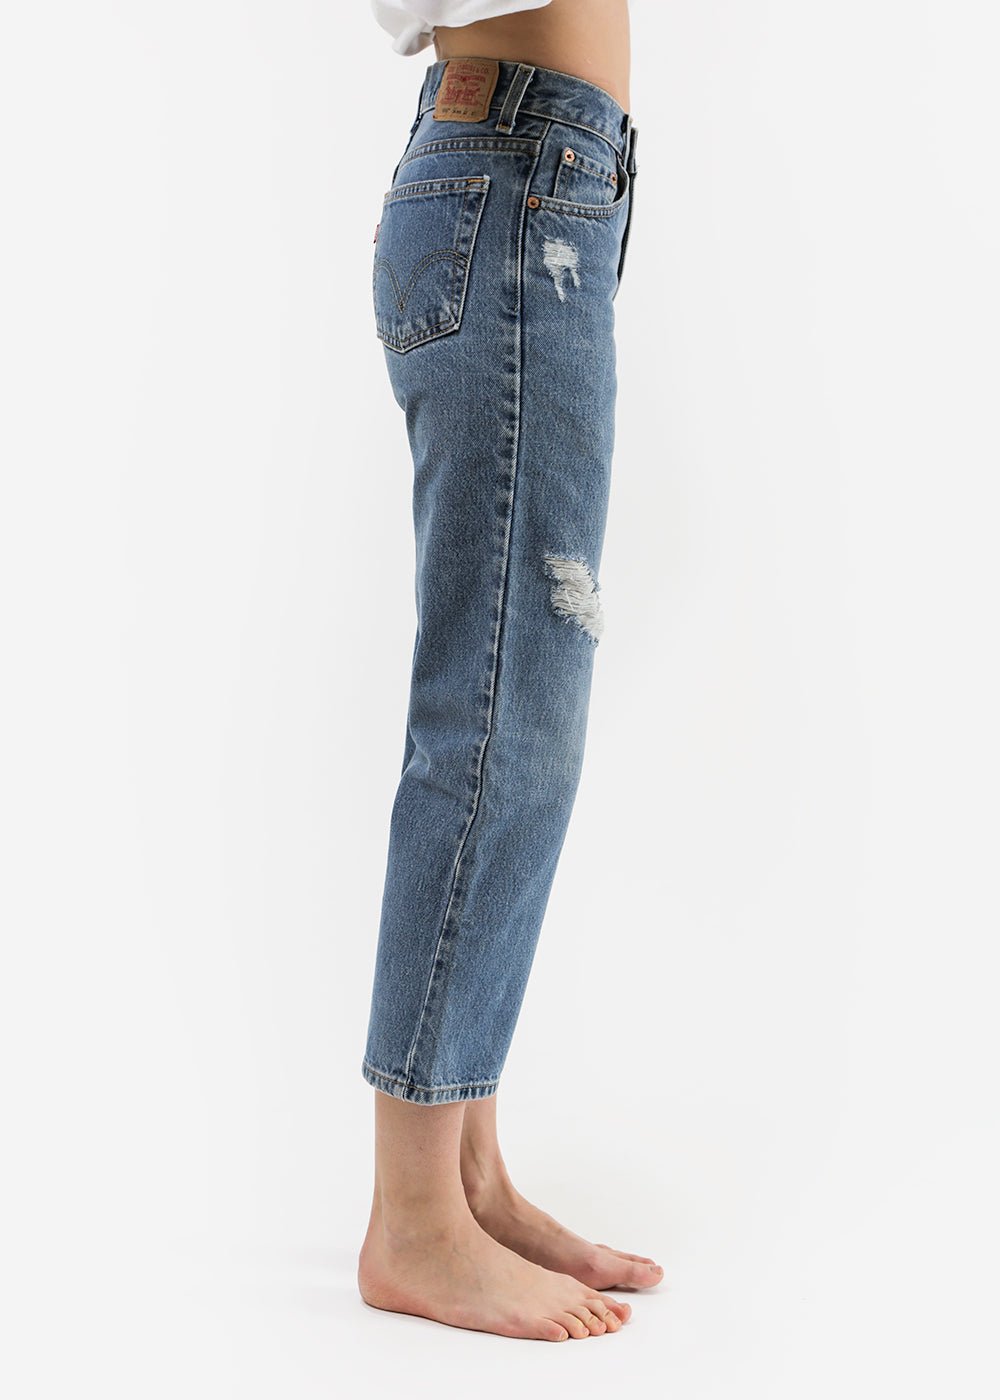 Vintage Levis High Waist Jeans Medium to Dark Wash 550 00 0 2 4 6